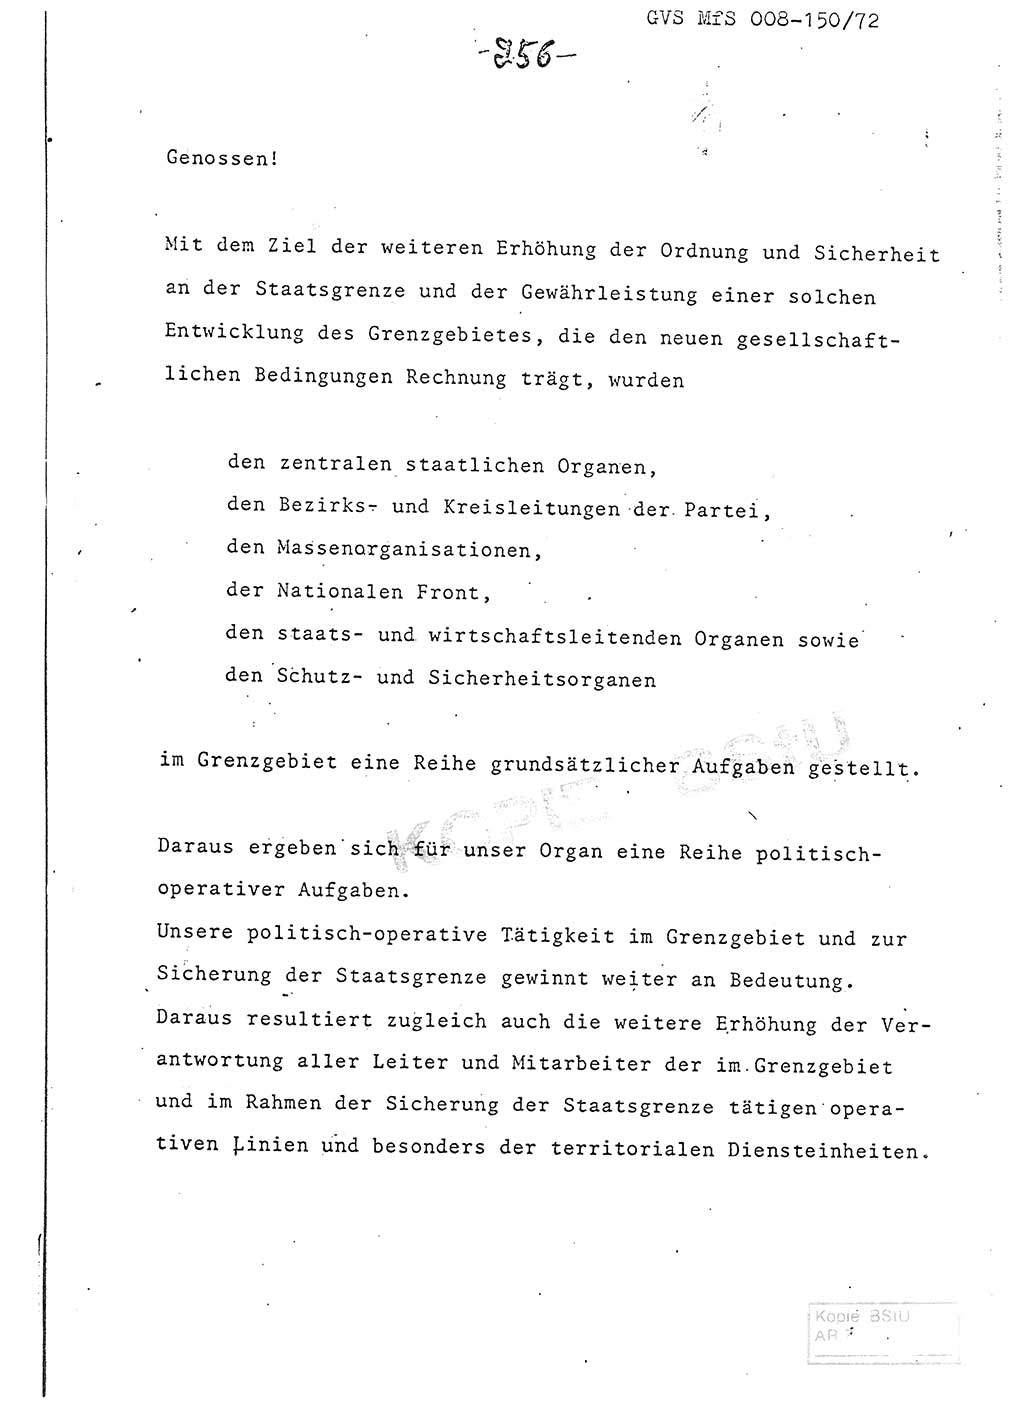 Referat (Entwurf) des Genossen Minister (Generaloberst Erich Mielke) auf der Dienstkonferenz 1972, Ministerium für Staatssicherheit (MfS) [Deutsche Demokratische Republik (DDR)], Der Minister, Geheime Verschlußsache (GVS) 008-150/72, Berlin 25.2.1972, Seite 256 (Ref. Entw. DK MfS DDR Min. GVS 008-150/72 1972, S. 256)